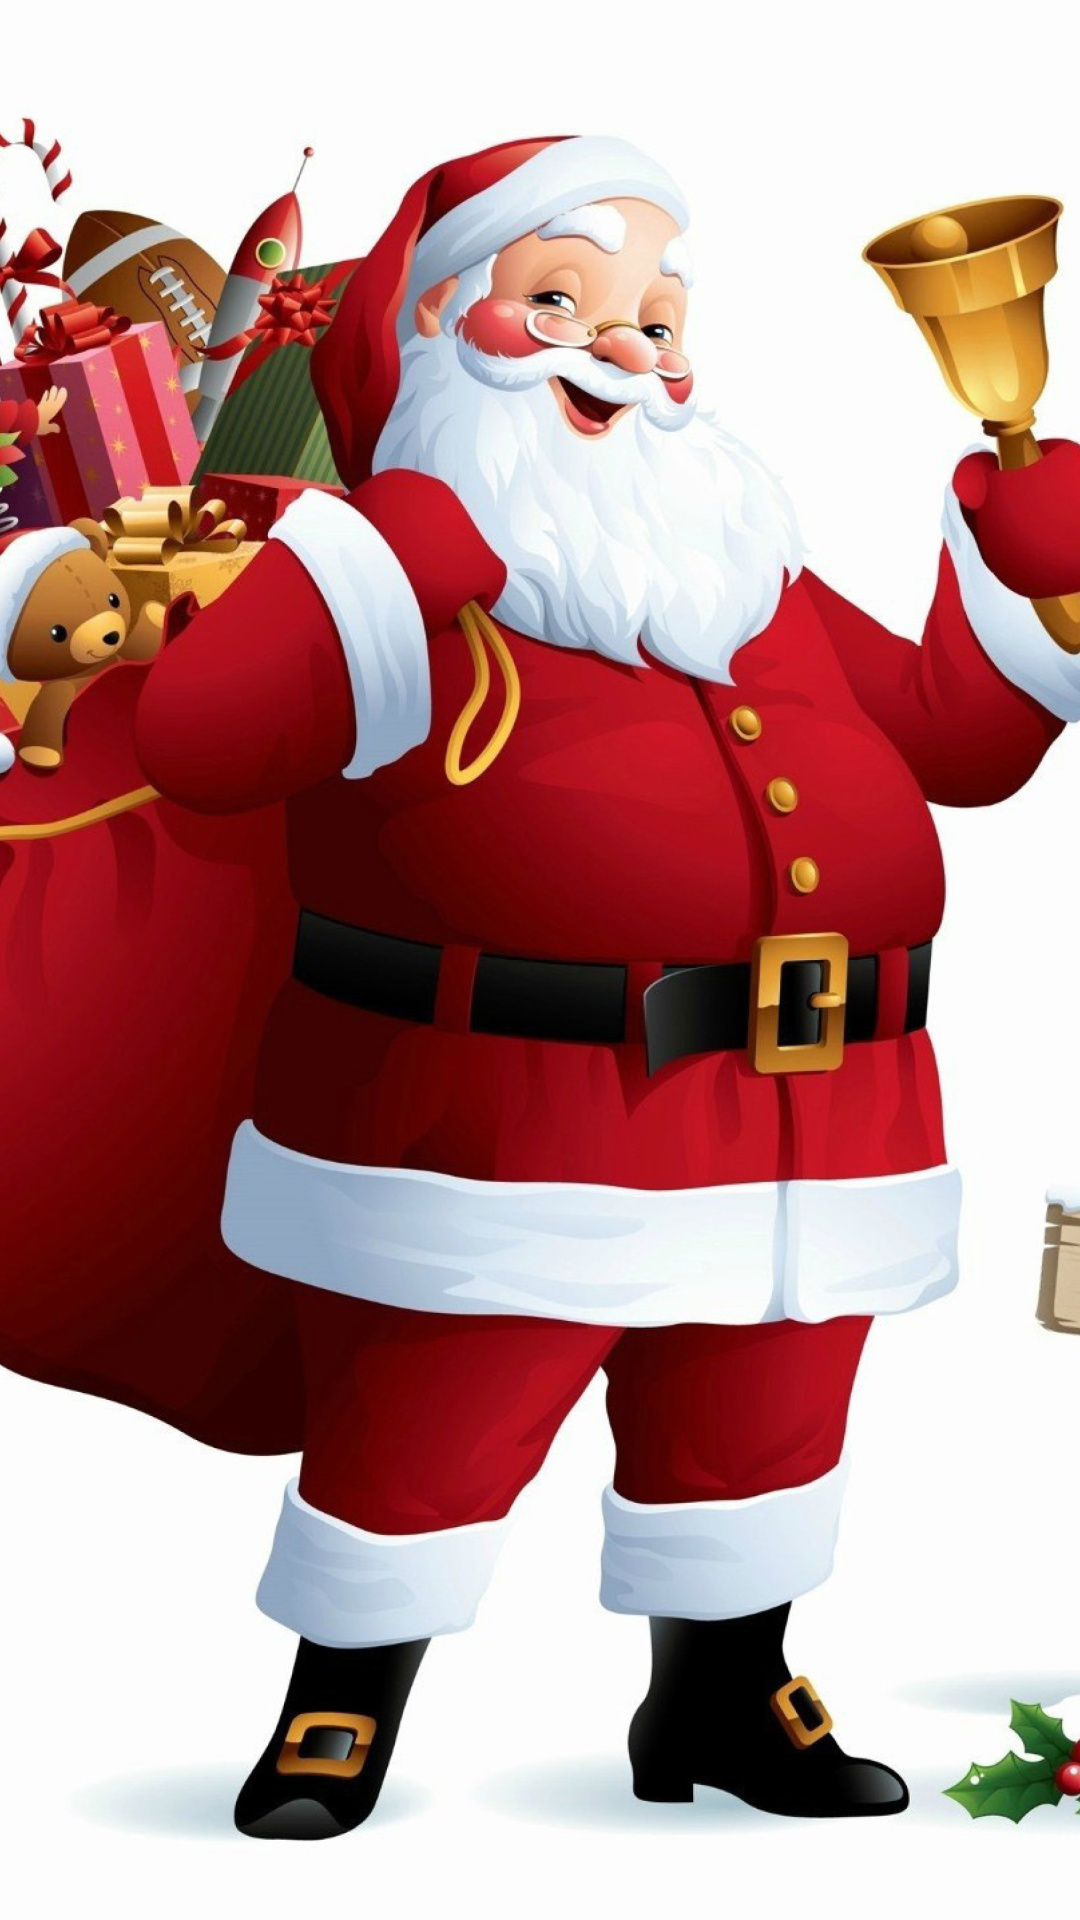 HO HO HO Merry Christmas Santa Claus screenshot #1 1080x1920